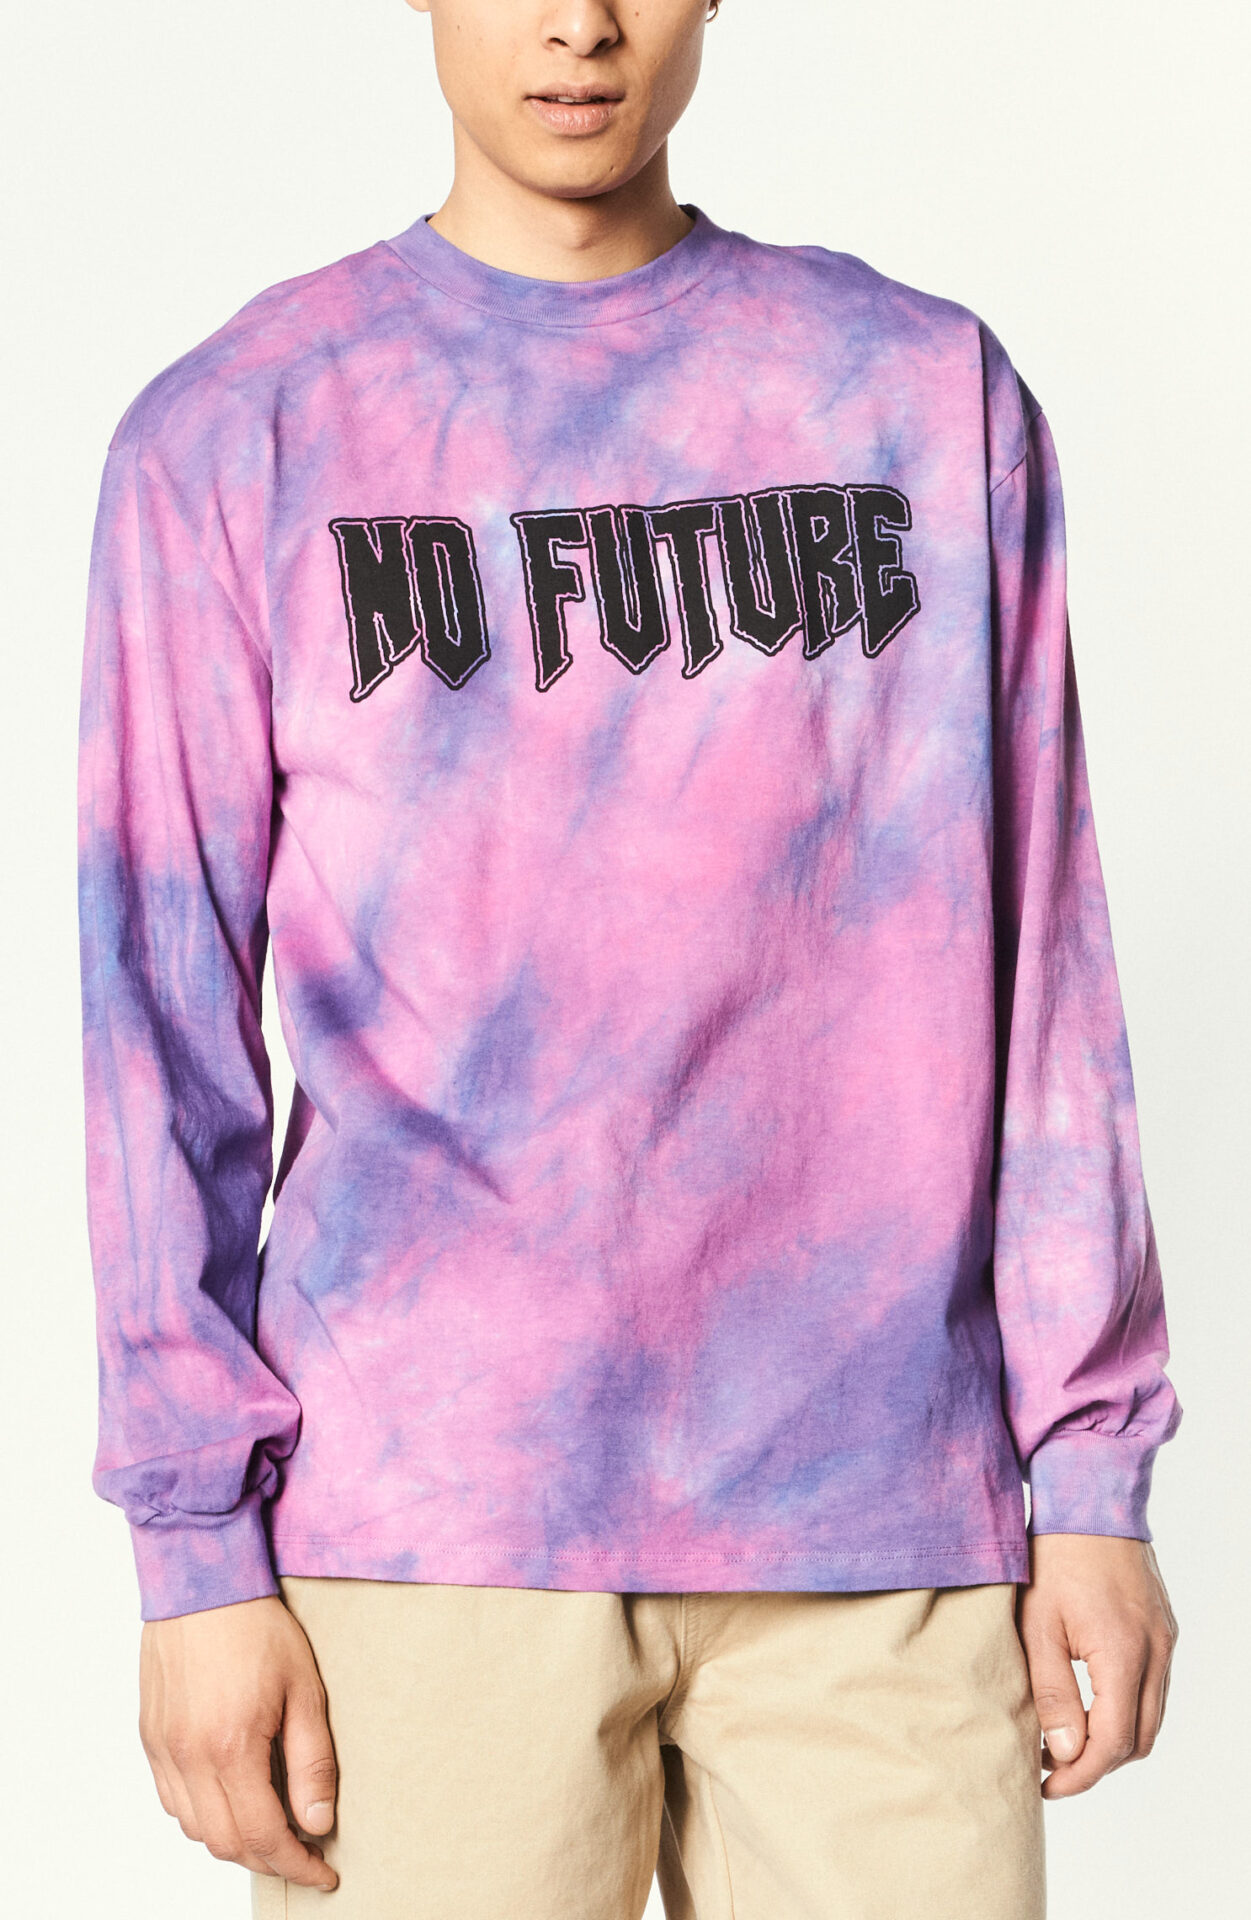 Longsleeve "No Future" in pink / purple